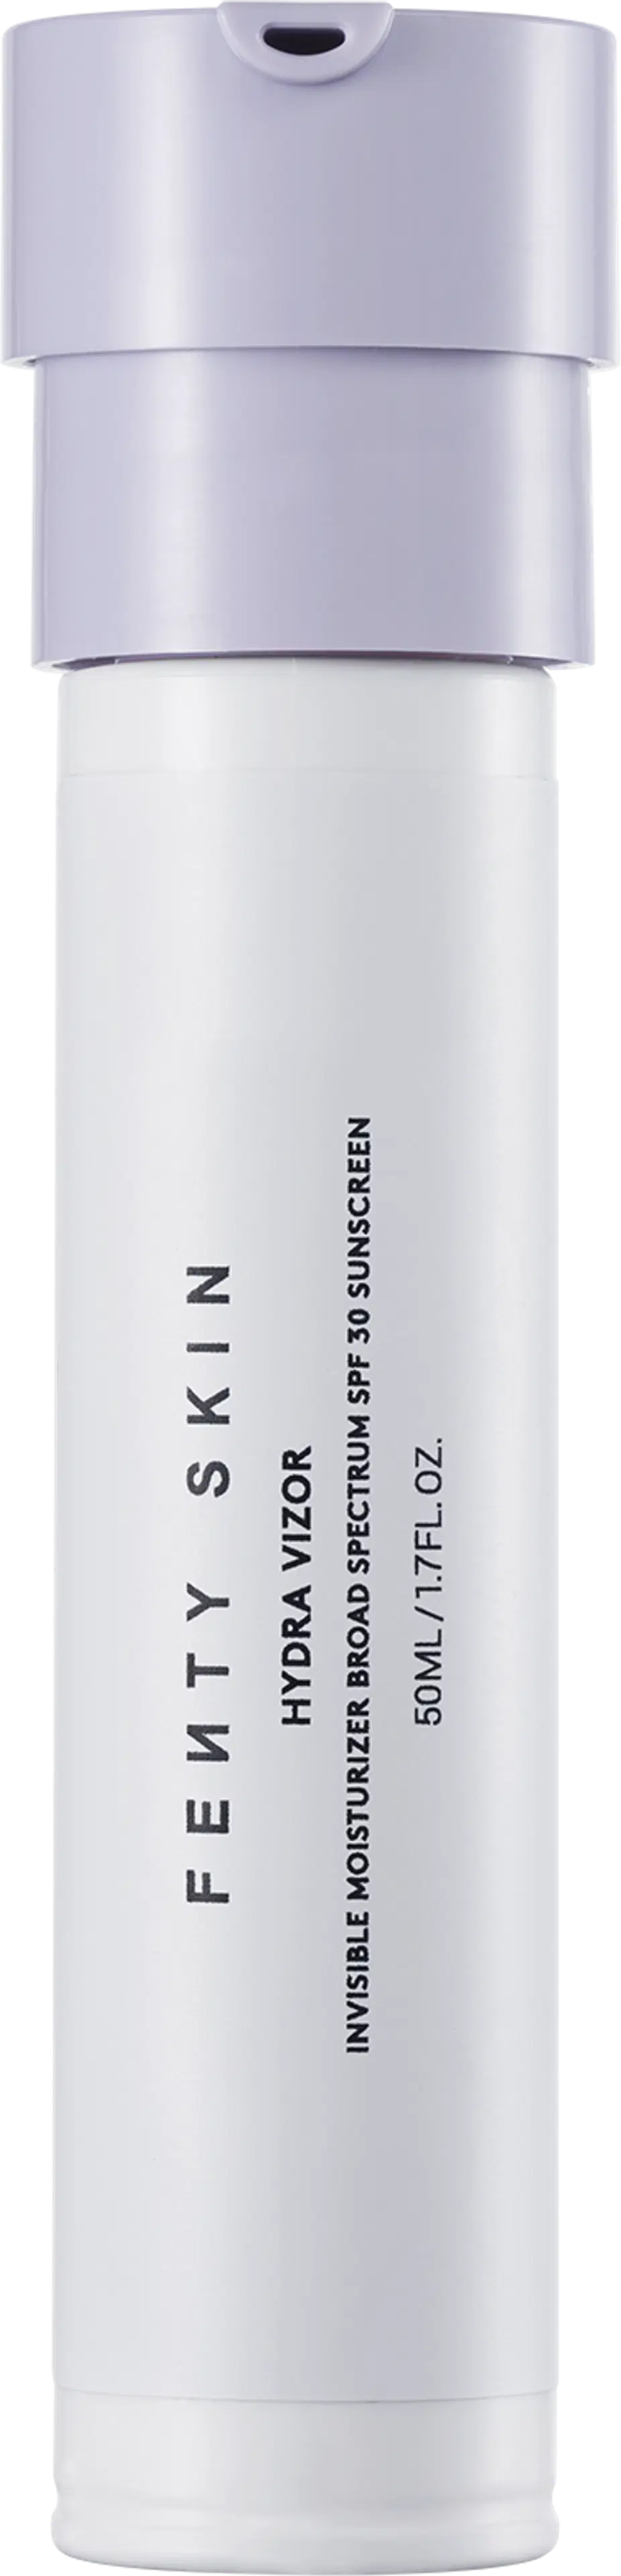 Fenty Skin Hydra Vizor Mineral SPF 30 Moisturizer Refill täyttöpakkaus 50 ml